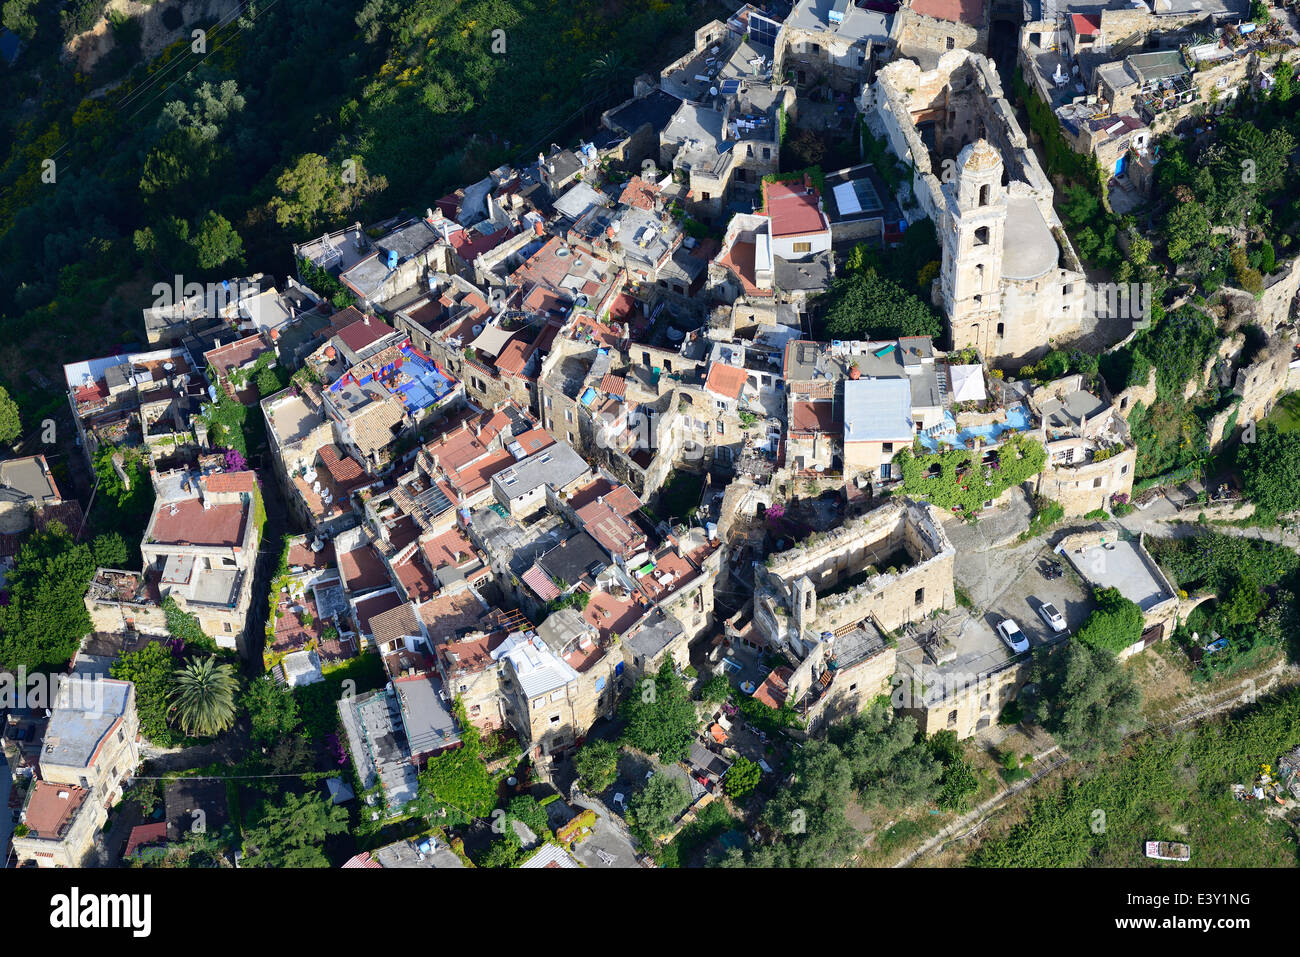 LUFTAUFNAHME. Hochgethrontes mittelalterliches Dorf, schwer beschädigt durch ein Erdbeben, restauriert von Künstlern. Bussana Vecchia, Provinz Imperia, Ligurien, Italien. Stockfoto